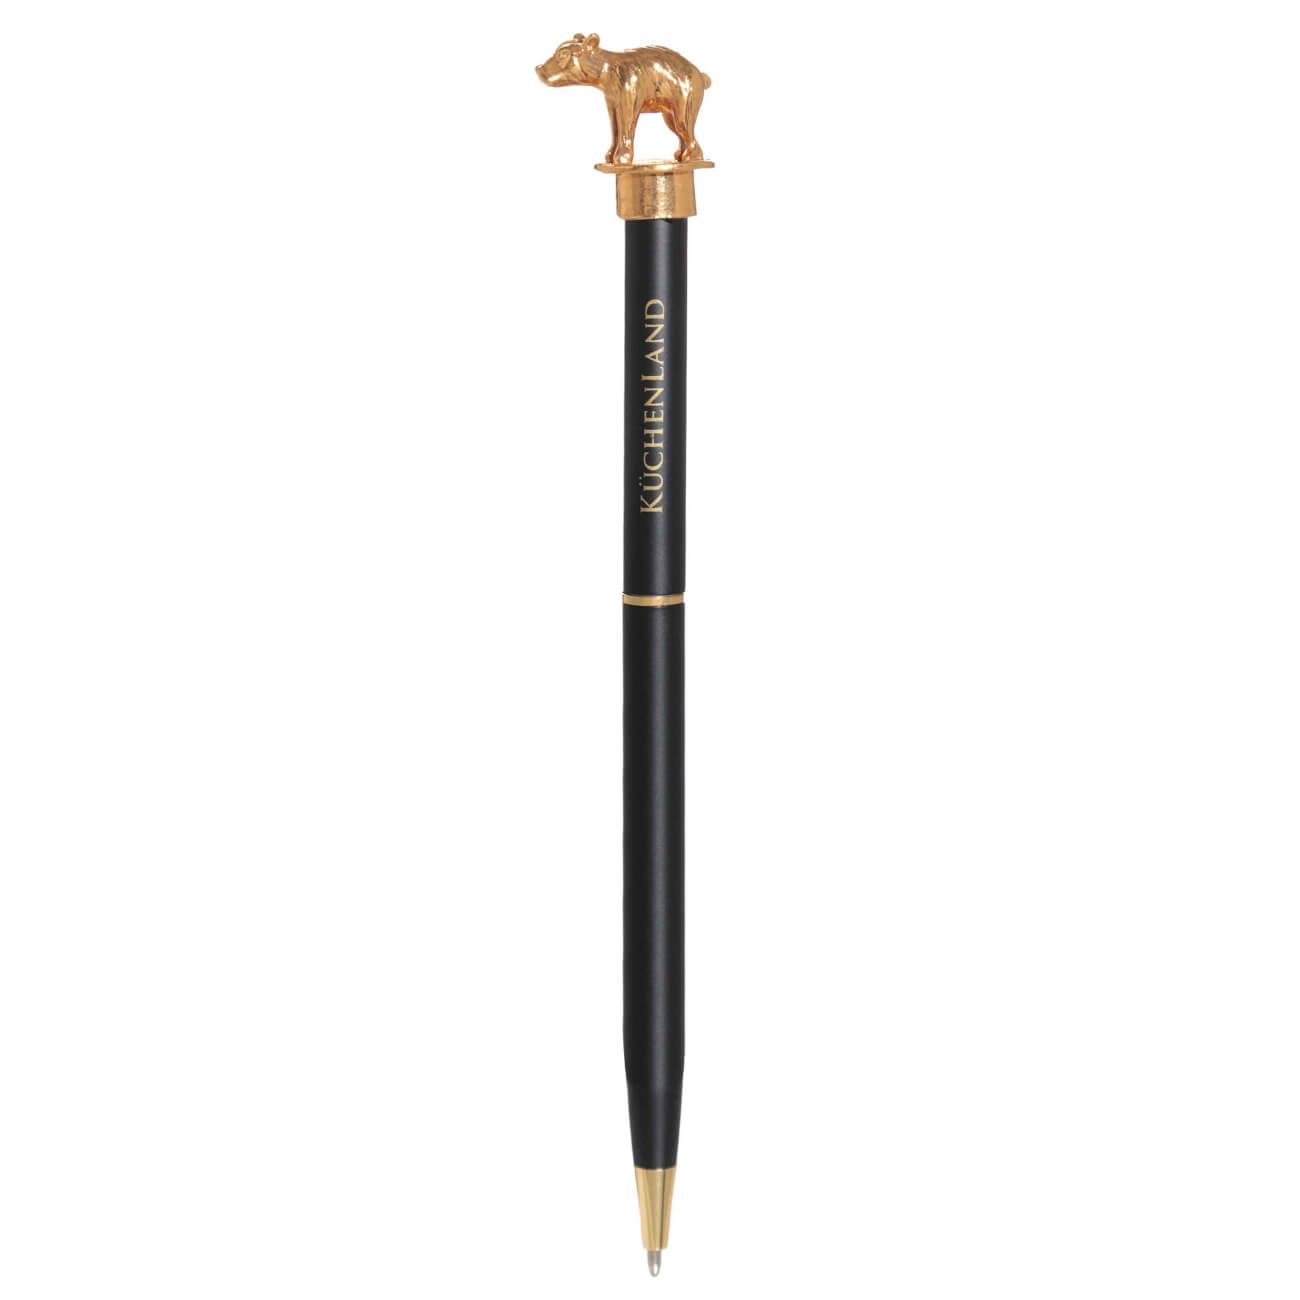 Ручка шариковая, 14 см, с фигуркой, сталь, черная, Медведь, Draw figure ручка шариковая подарочная поворотная в пластиковом футляре бордовая с серебристыми вставками